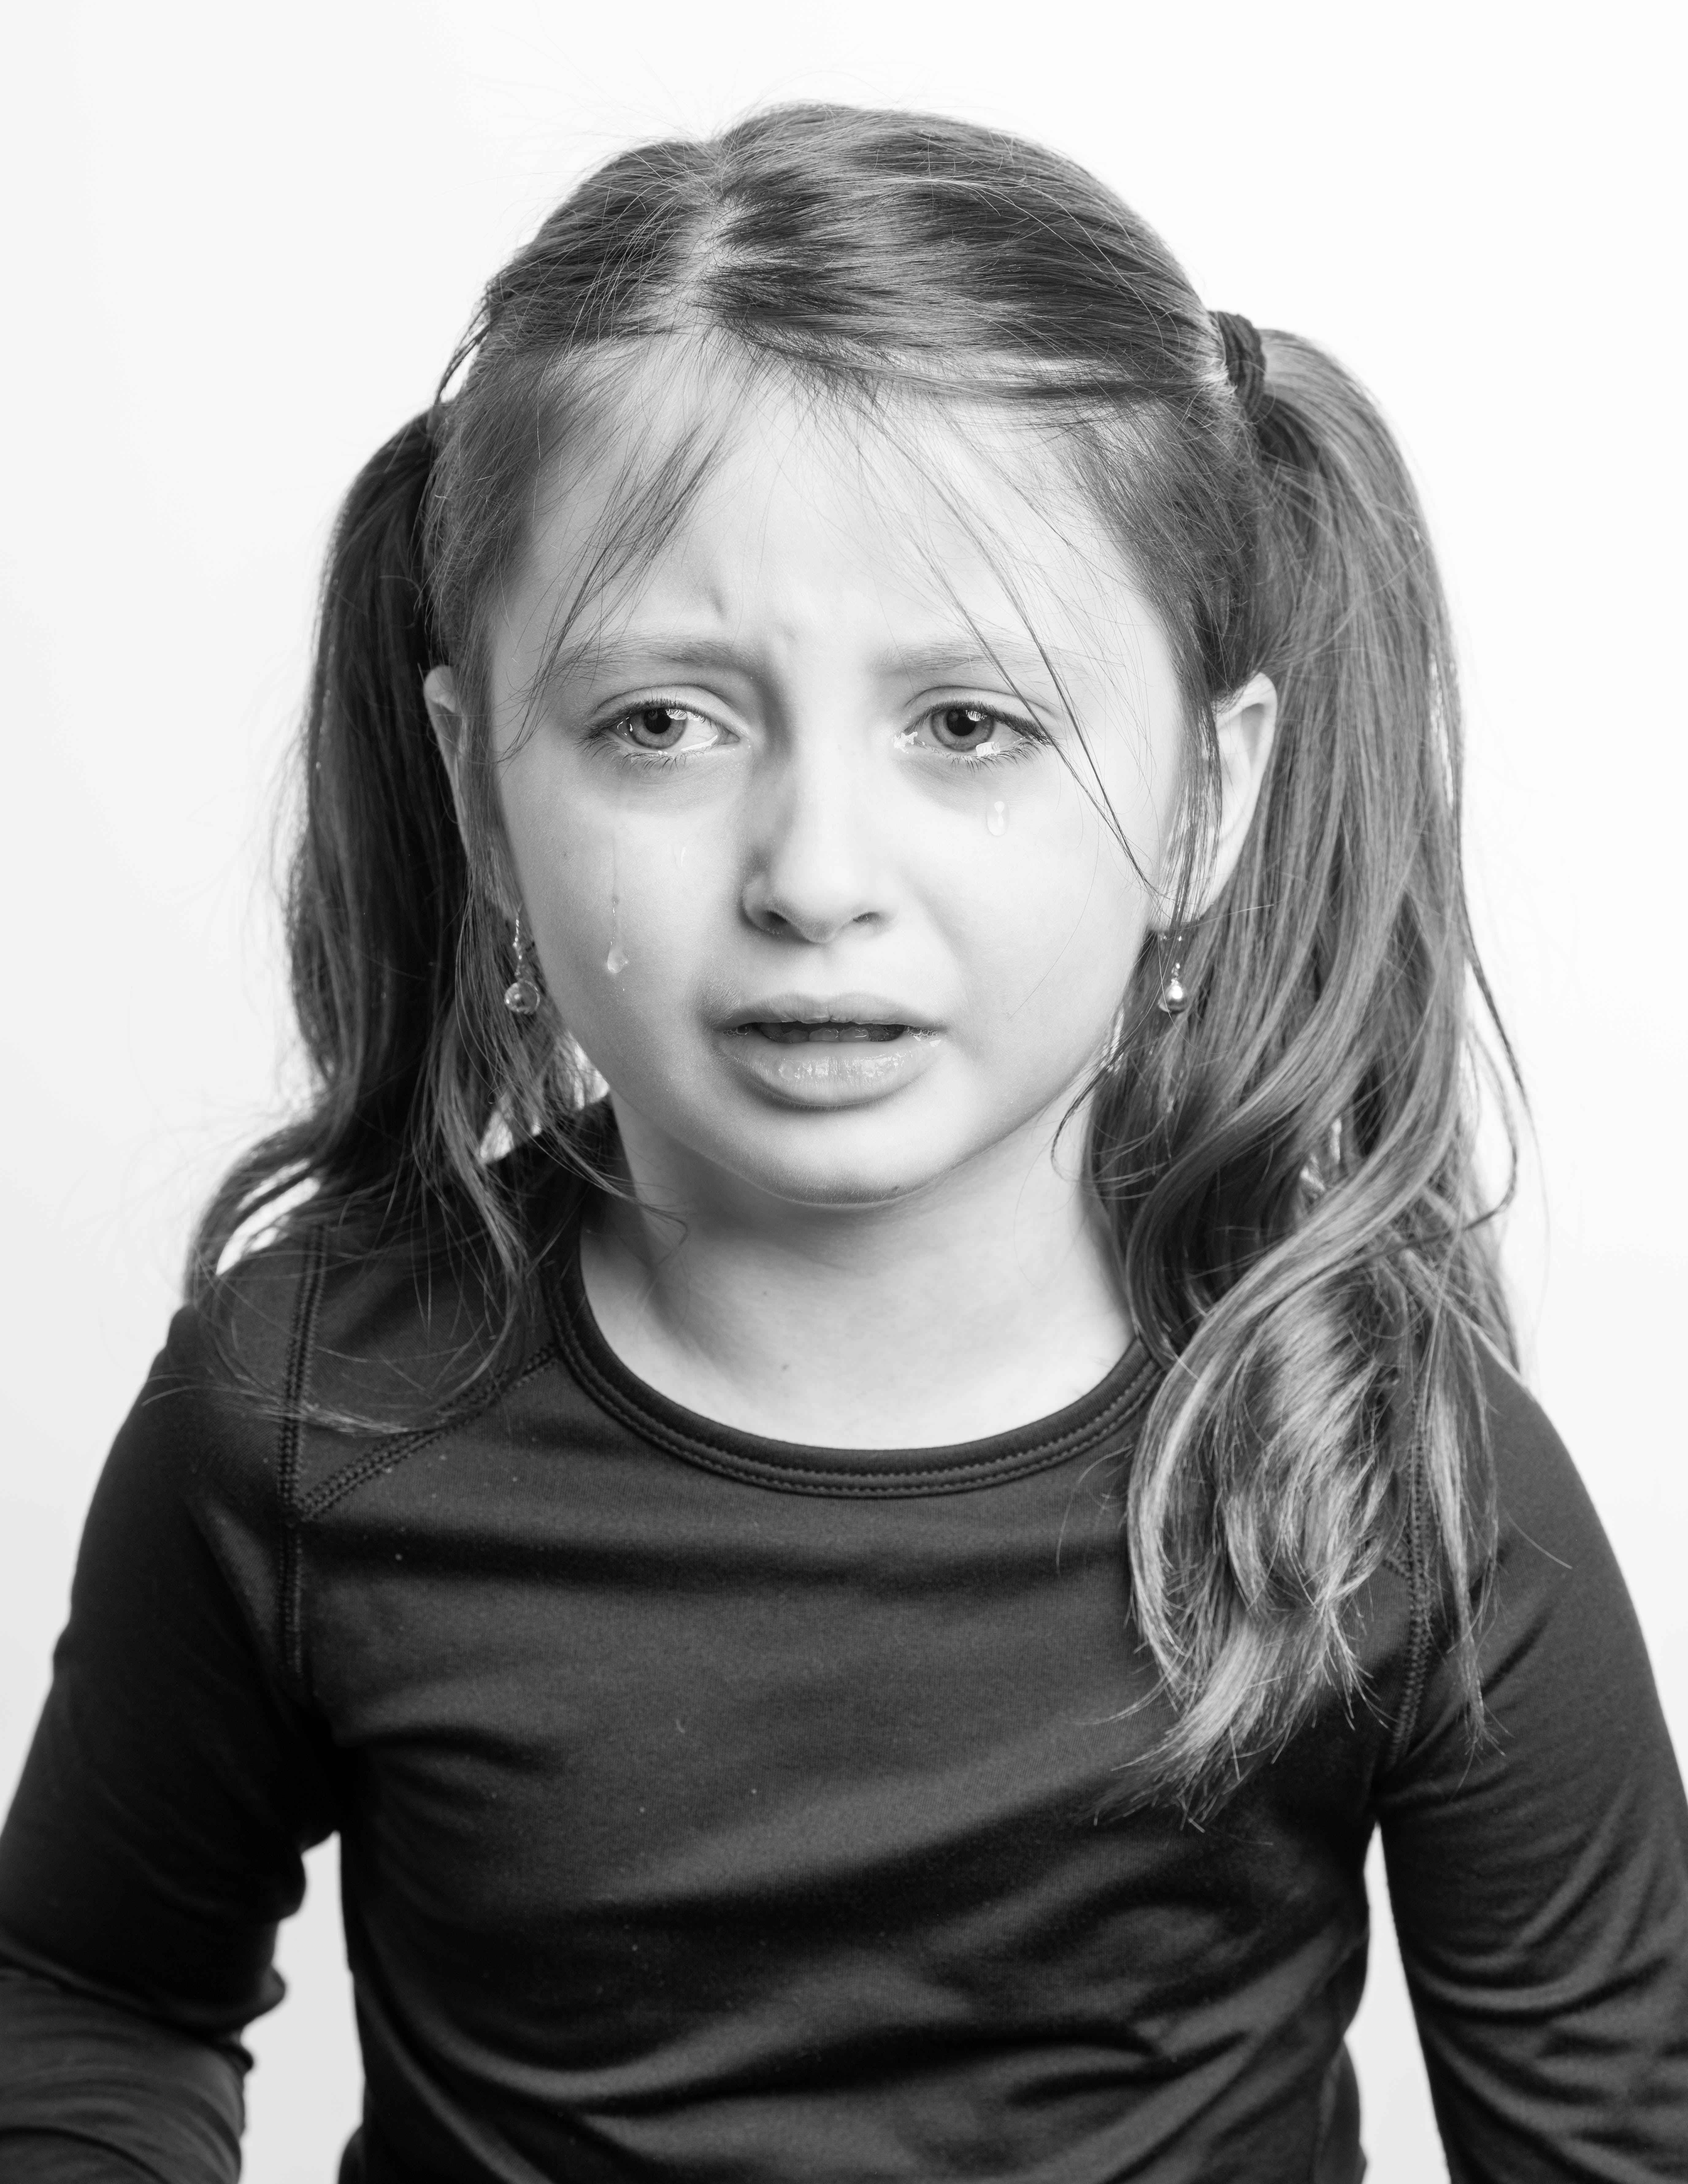 Ein Schwarz-Weiß-Bild von einem weinenden kleinen Mädchen | Quelle: Pexels